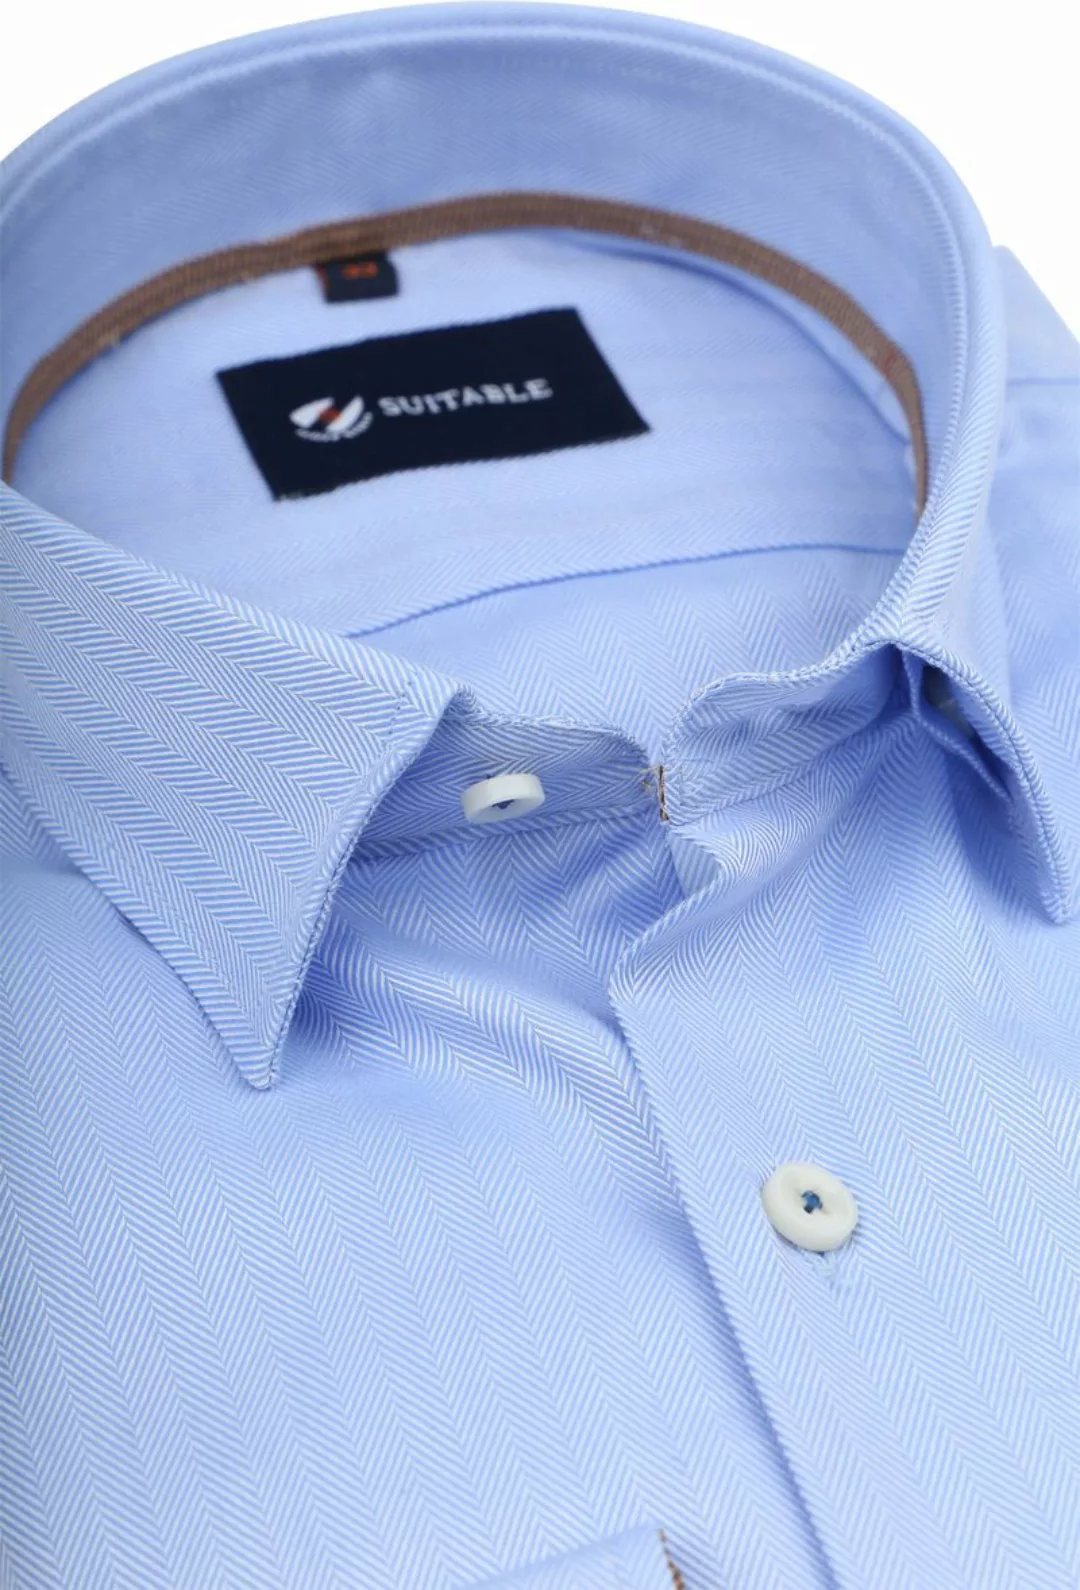 Suitable Hemd Herringbone Hellblau - Größe 41 günstig online kaufen